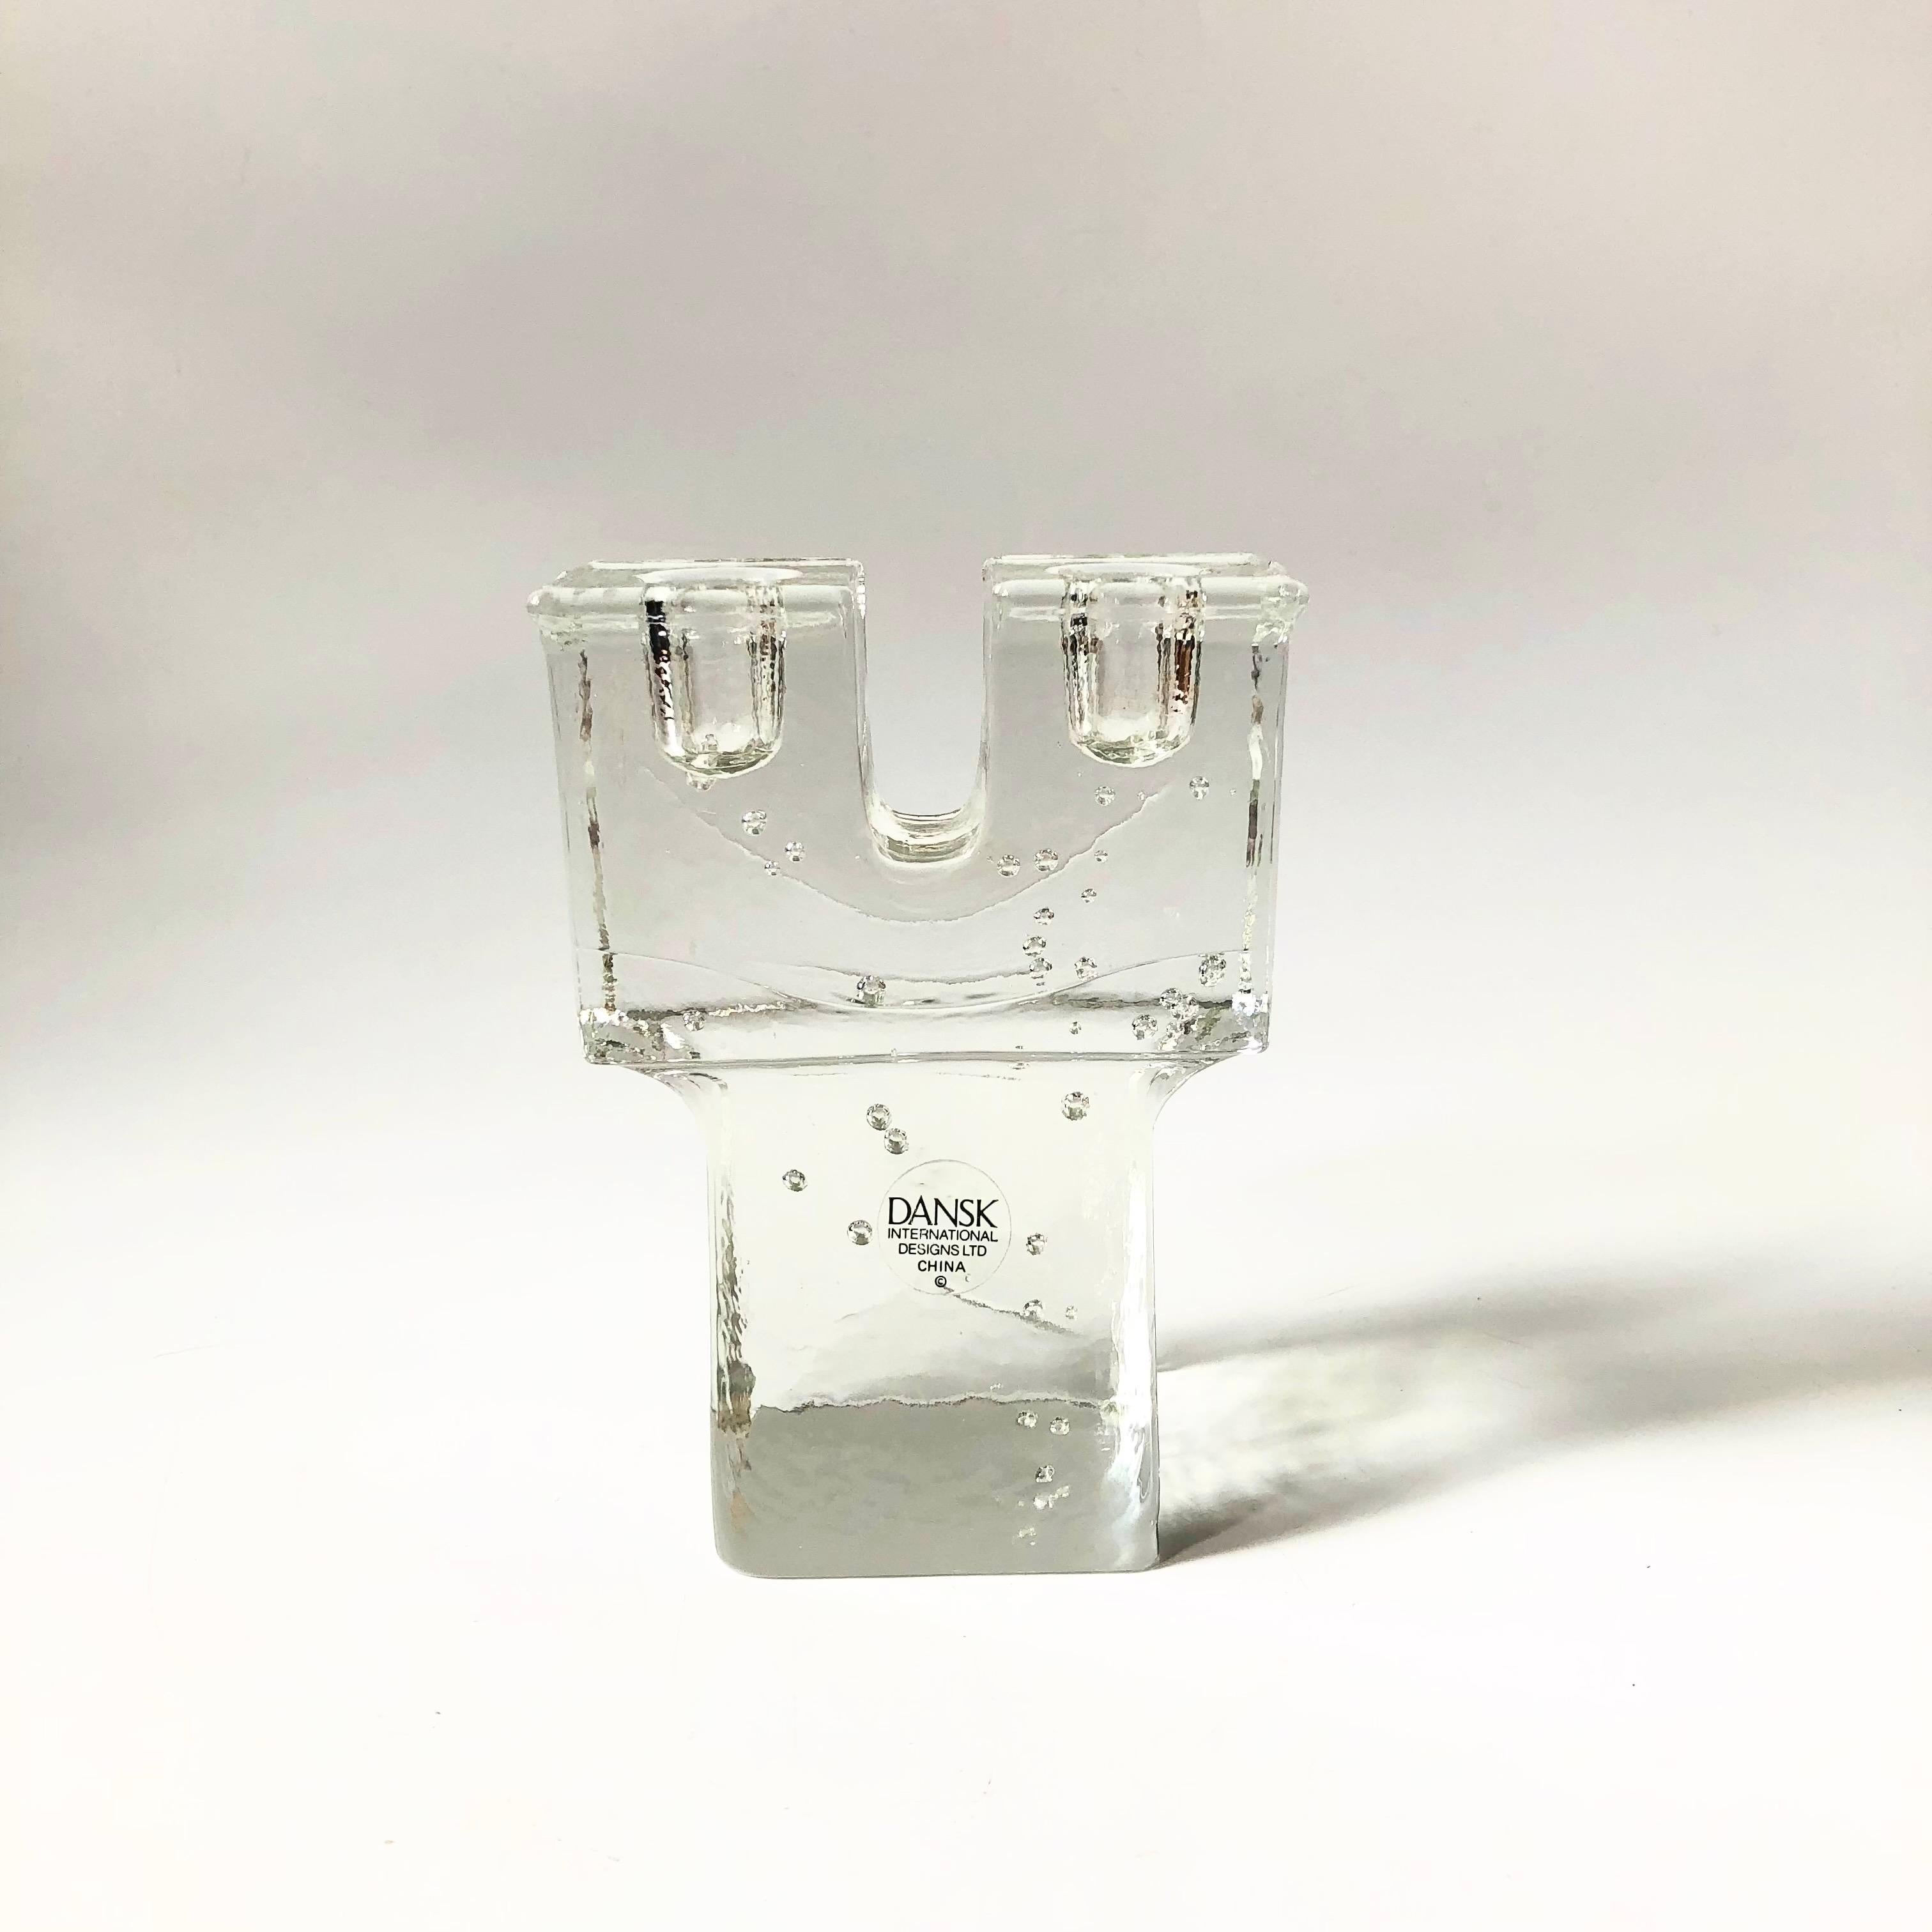 Ein doppelter Kerzenhalter aus Dansk-Glas. Schöne blockige Form mit kleinen Bläschen, die sich im ganzen Glas bilden. Hergestellt in China von Dansk, wahrscheinlich in den 1990er Jahren.

